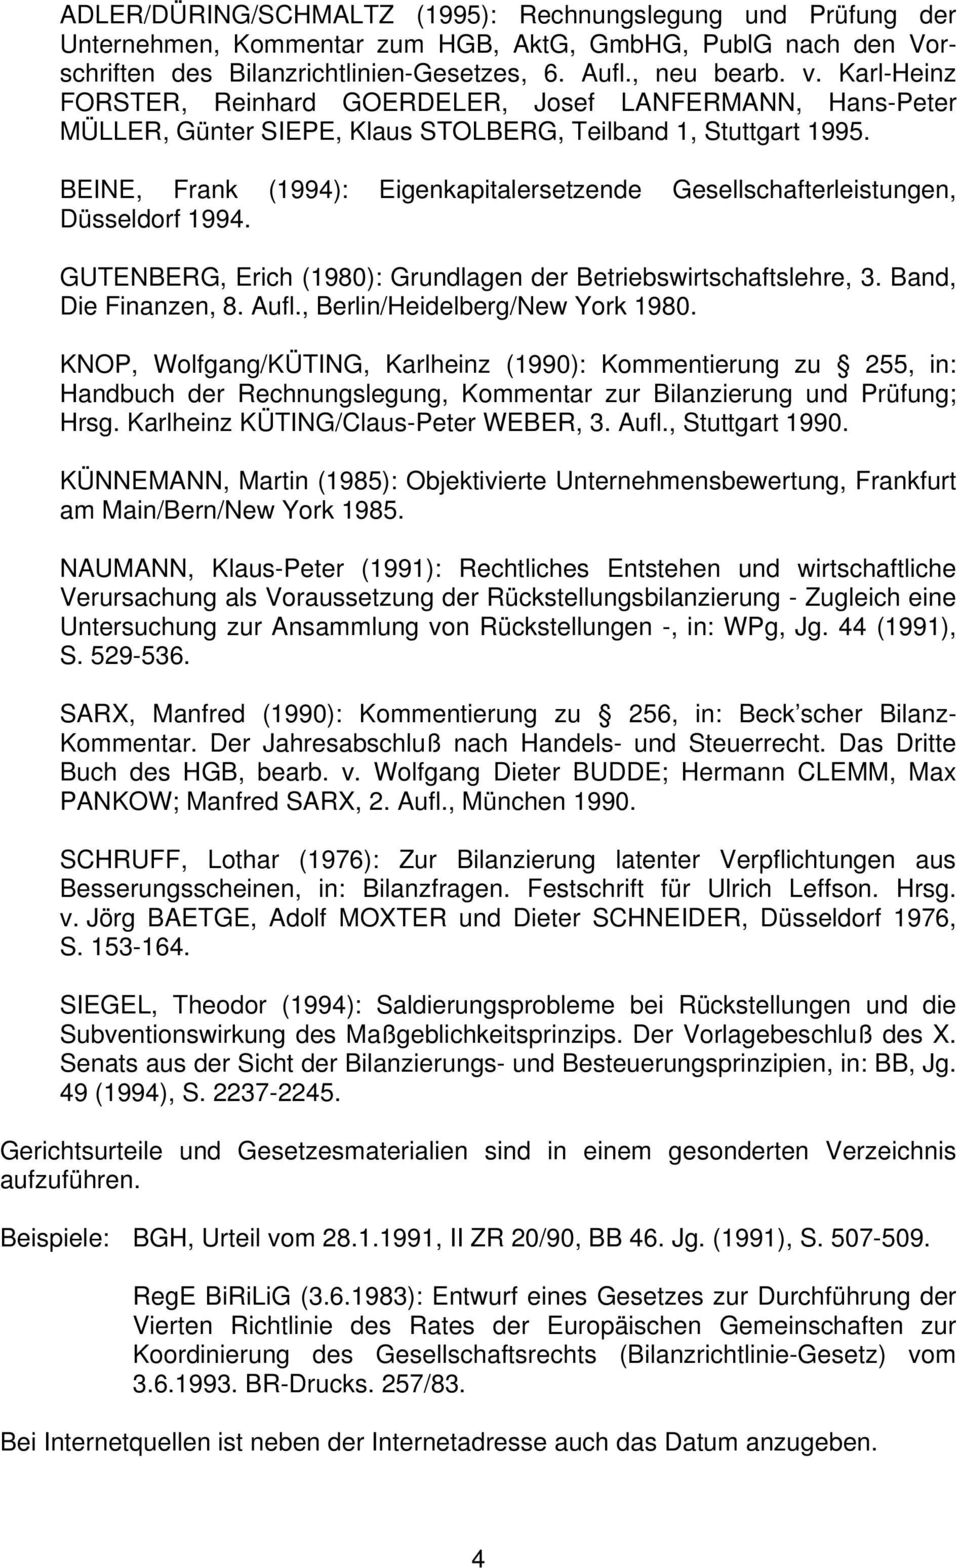 BEINE, Frank (1994): Eigenkapitalersetzende Gesellschafterleistungen, Düsseldorf 1994. GUTENBERG, Erich (1980): Grundlagen der Betriebswirtschaftslehre, 3. Band, Die Finanzen, 8. Aufl.